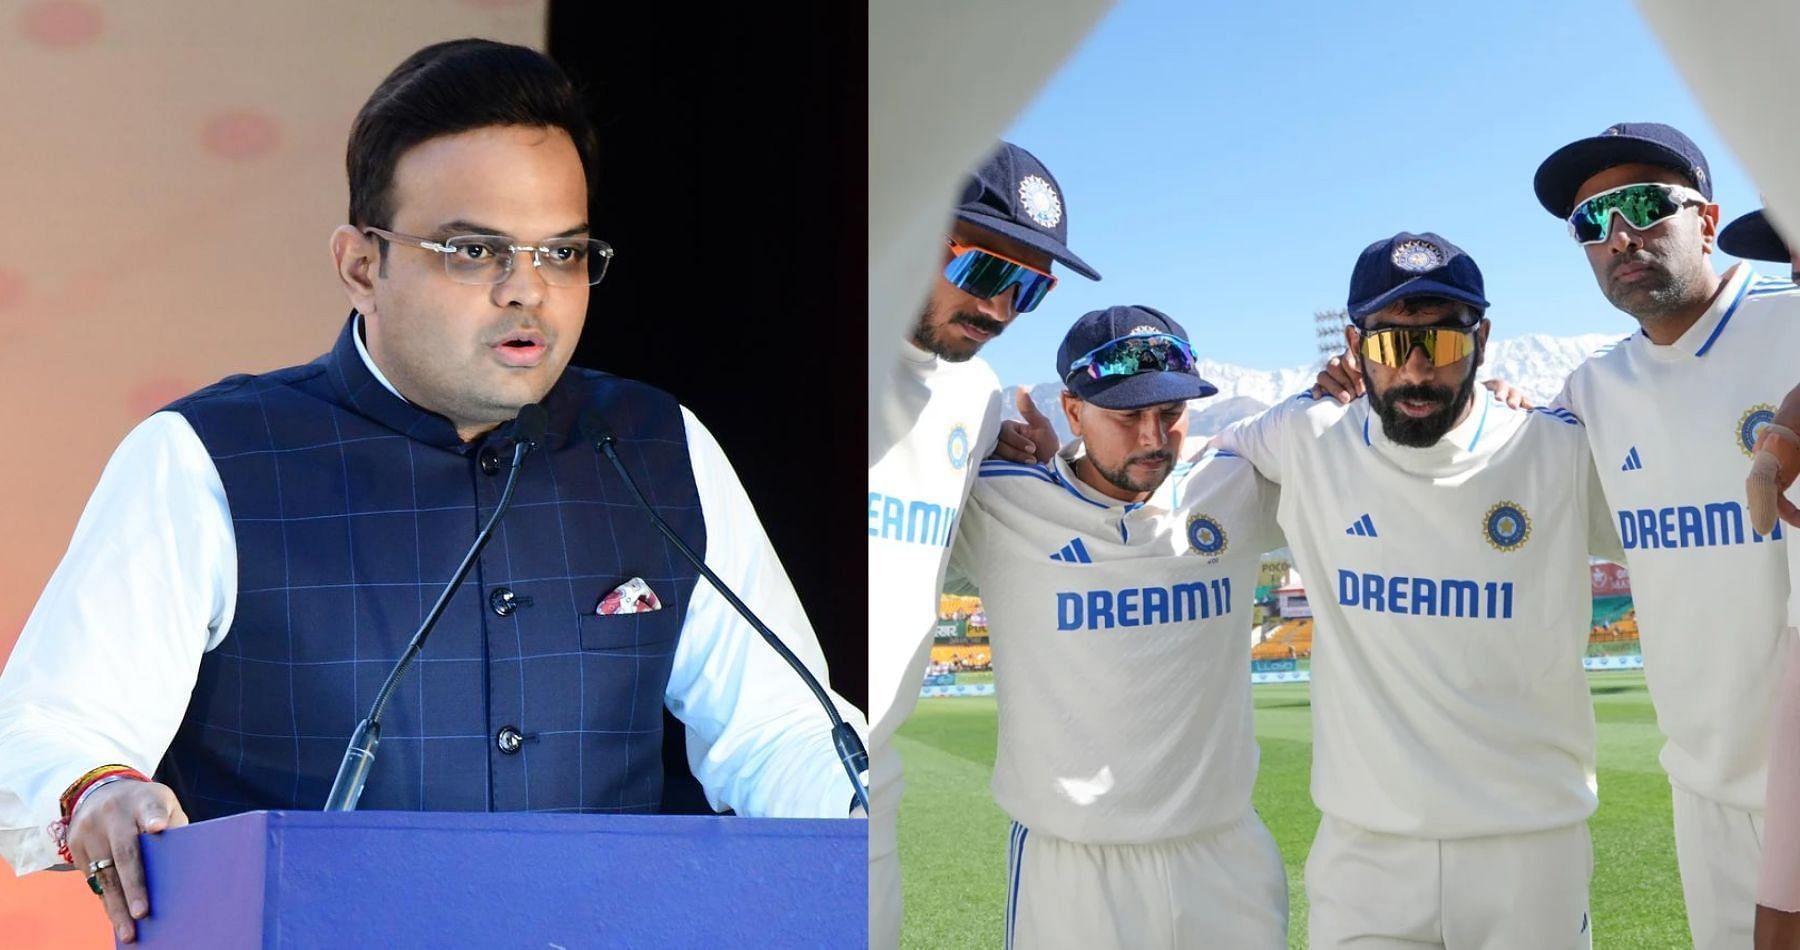 जय शाह भारत की पुरुष टेस्ट टीम के खिलाड़ियों के लिए की प्रमुख घोषणा 